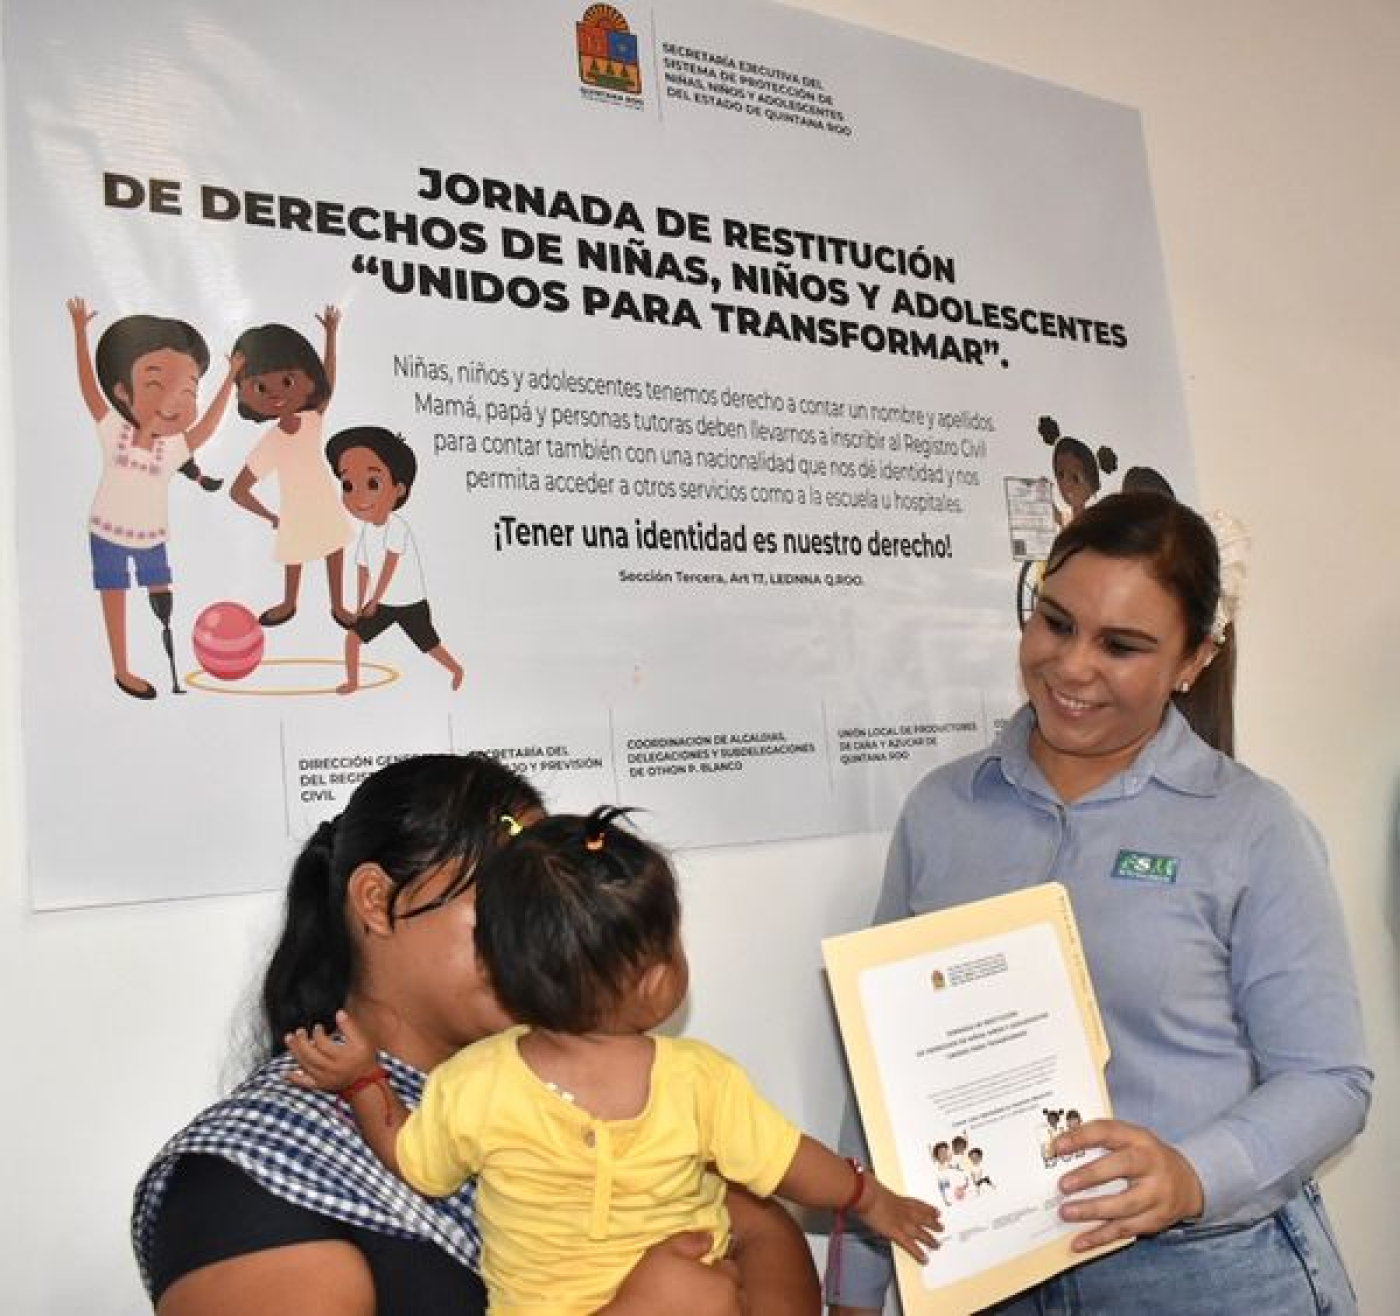 Restituyen el derecho a la identidad de 24 niños en comunidades rurales de Othón Pompeyo Blanco